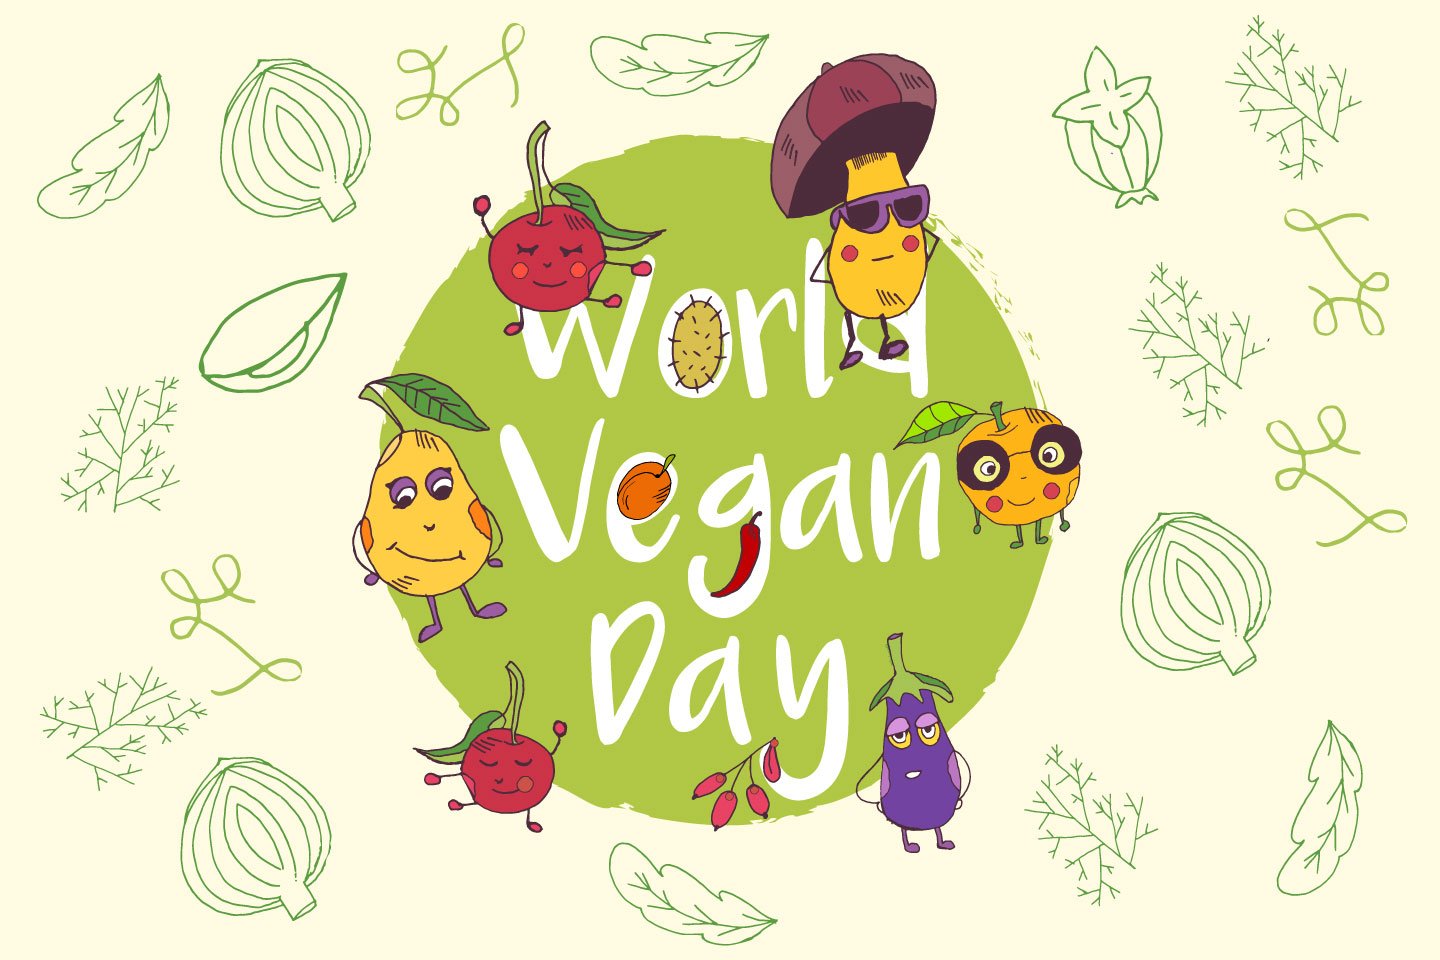 world vegan day illustration poster